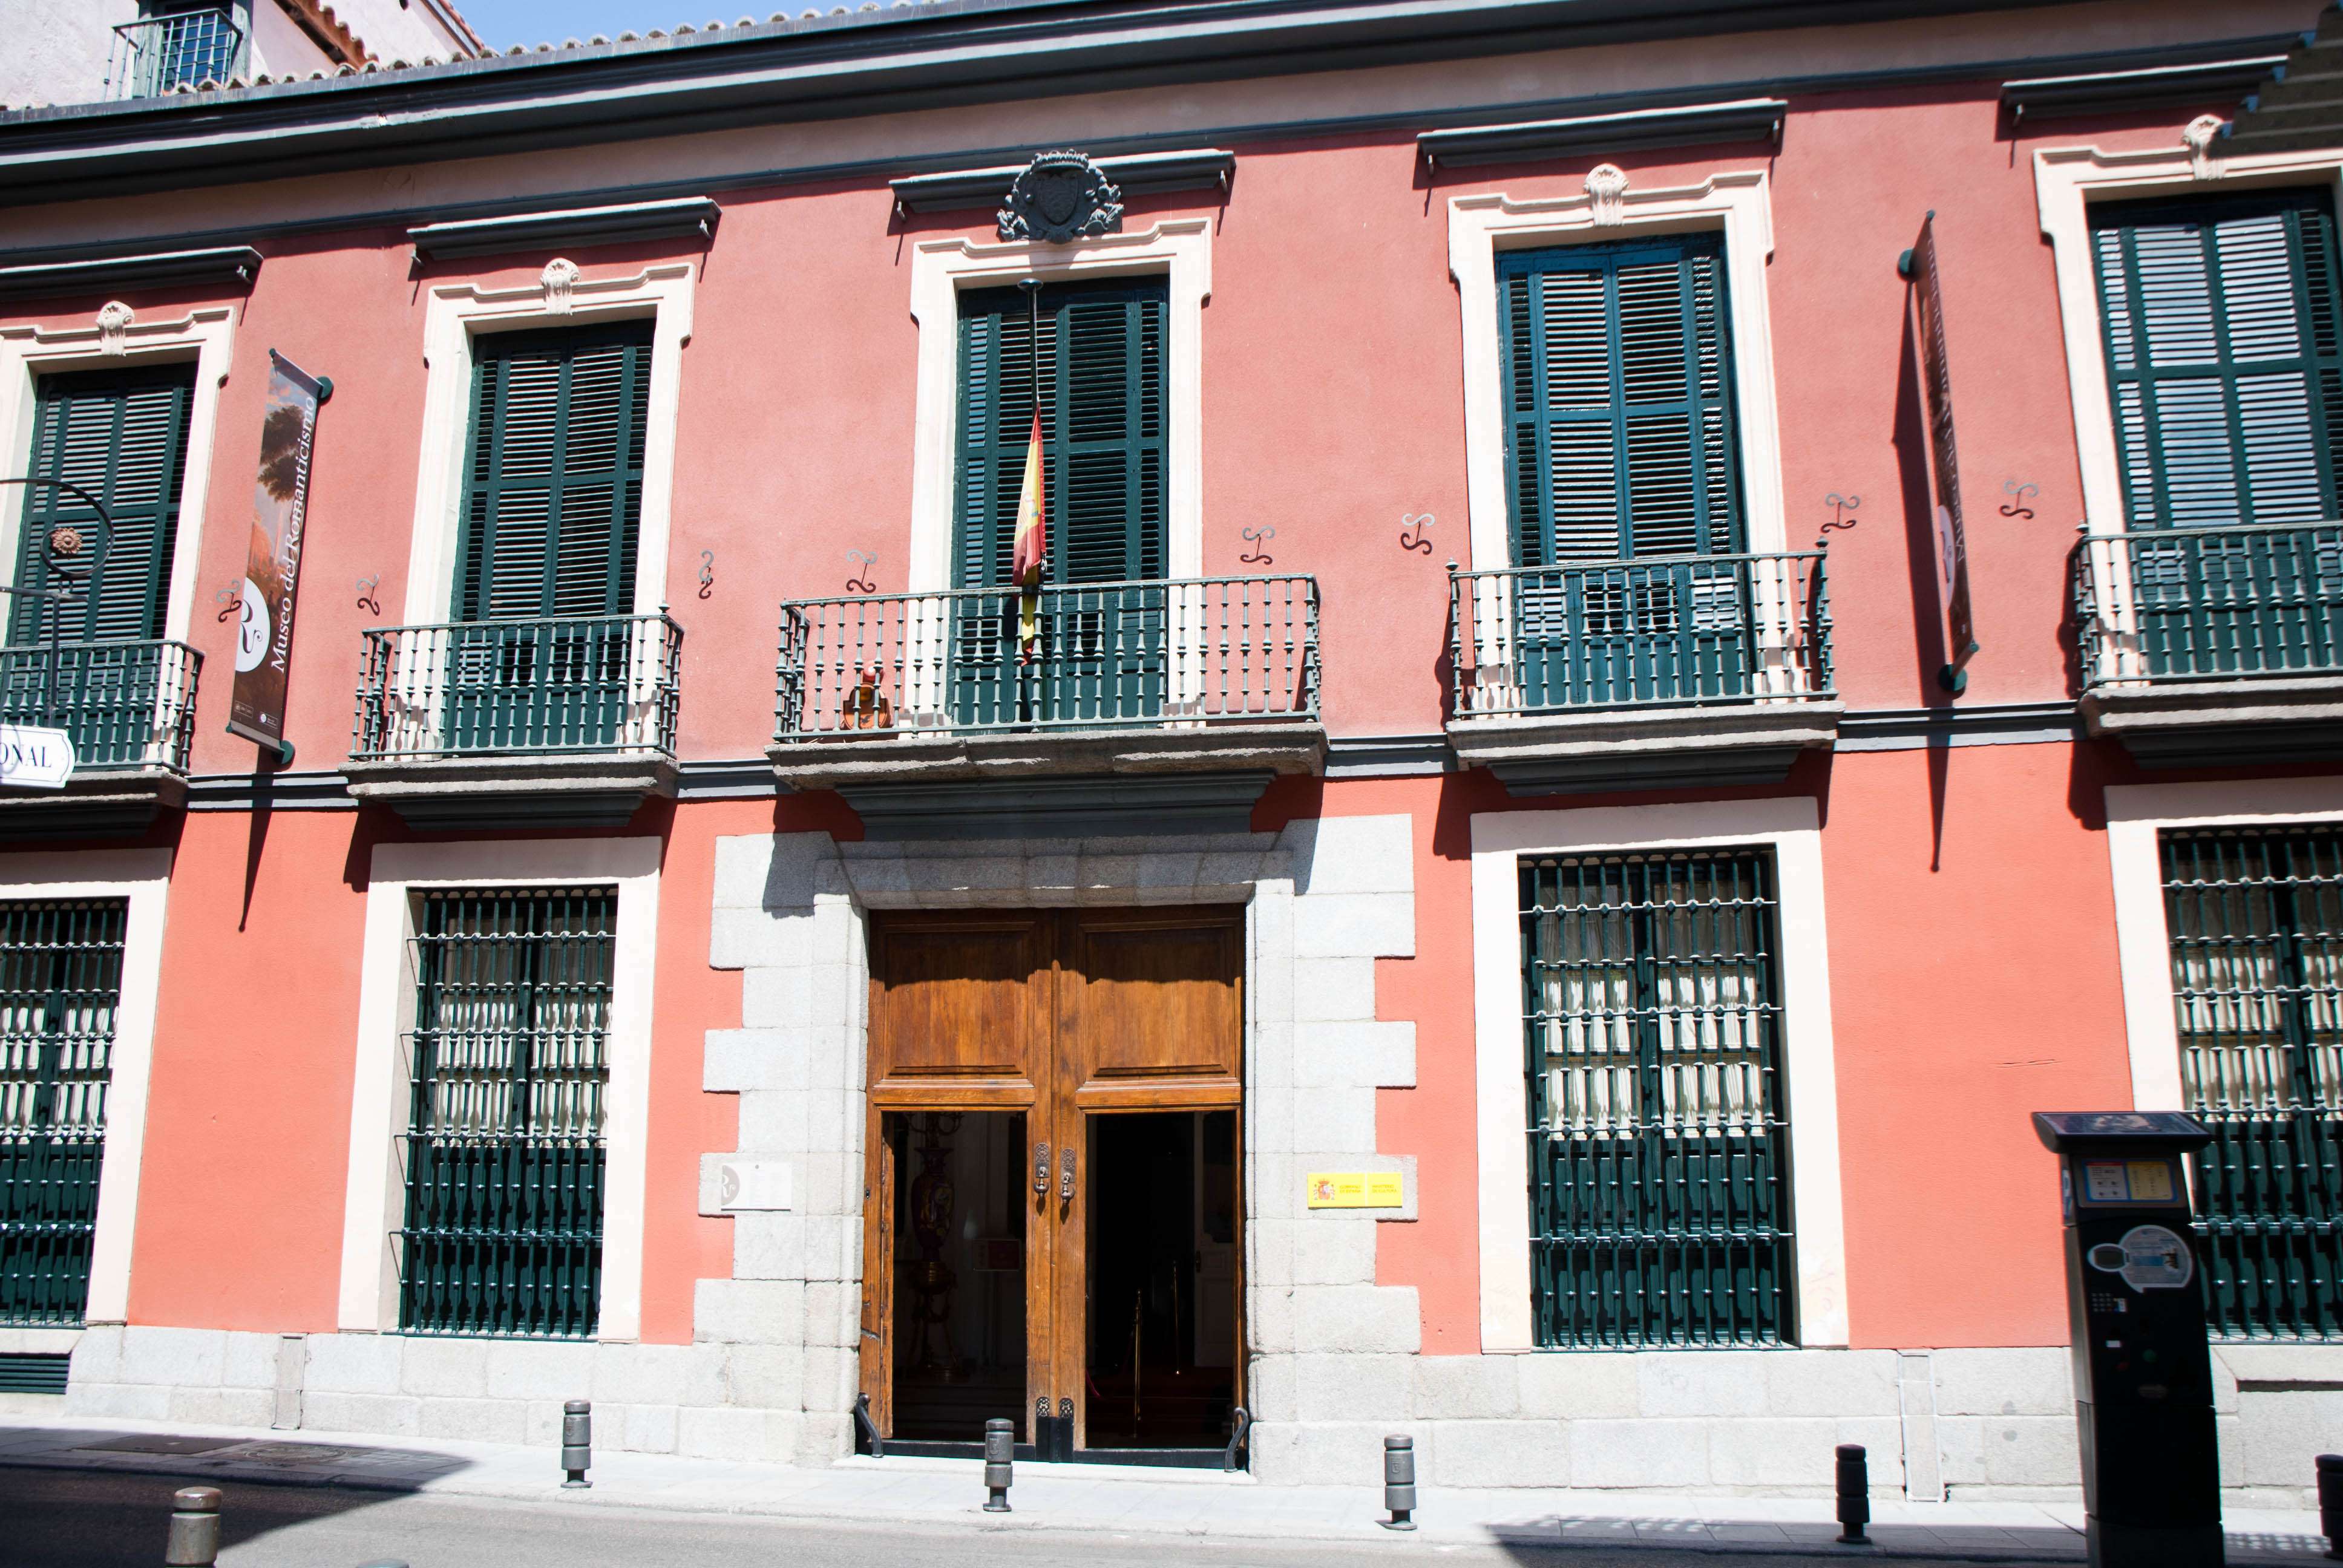 El Madrid olvidado - Blogs de España - El museo del romanticismo (1)